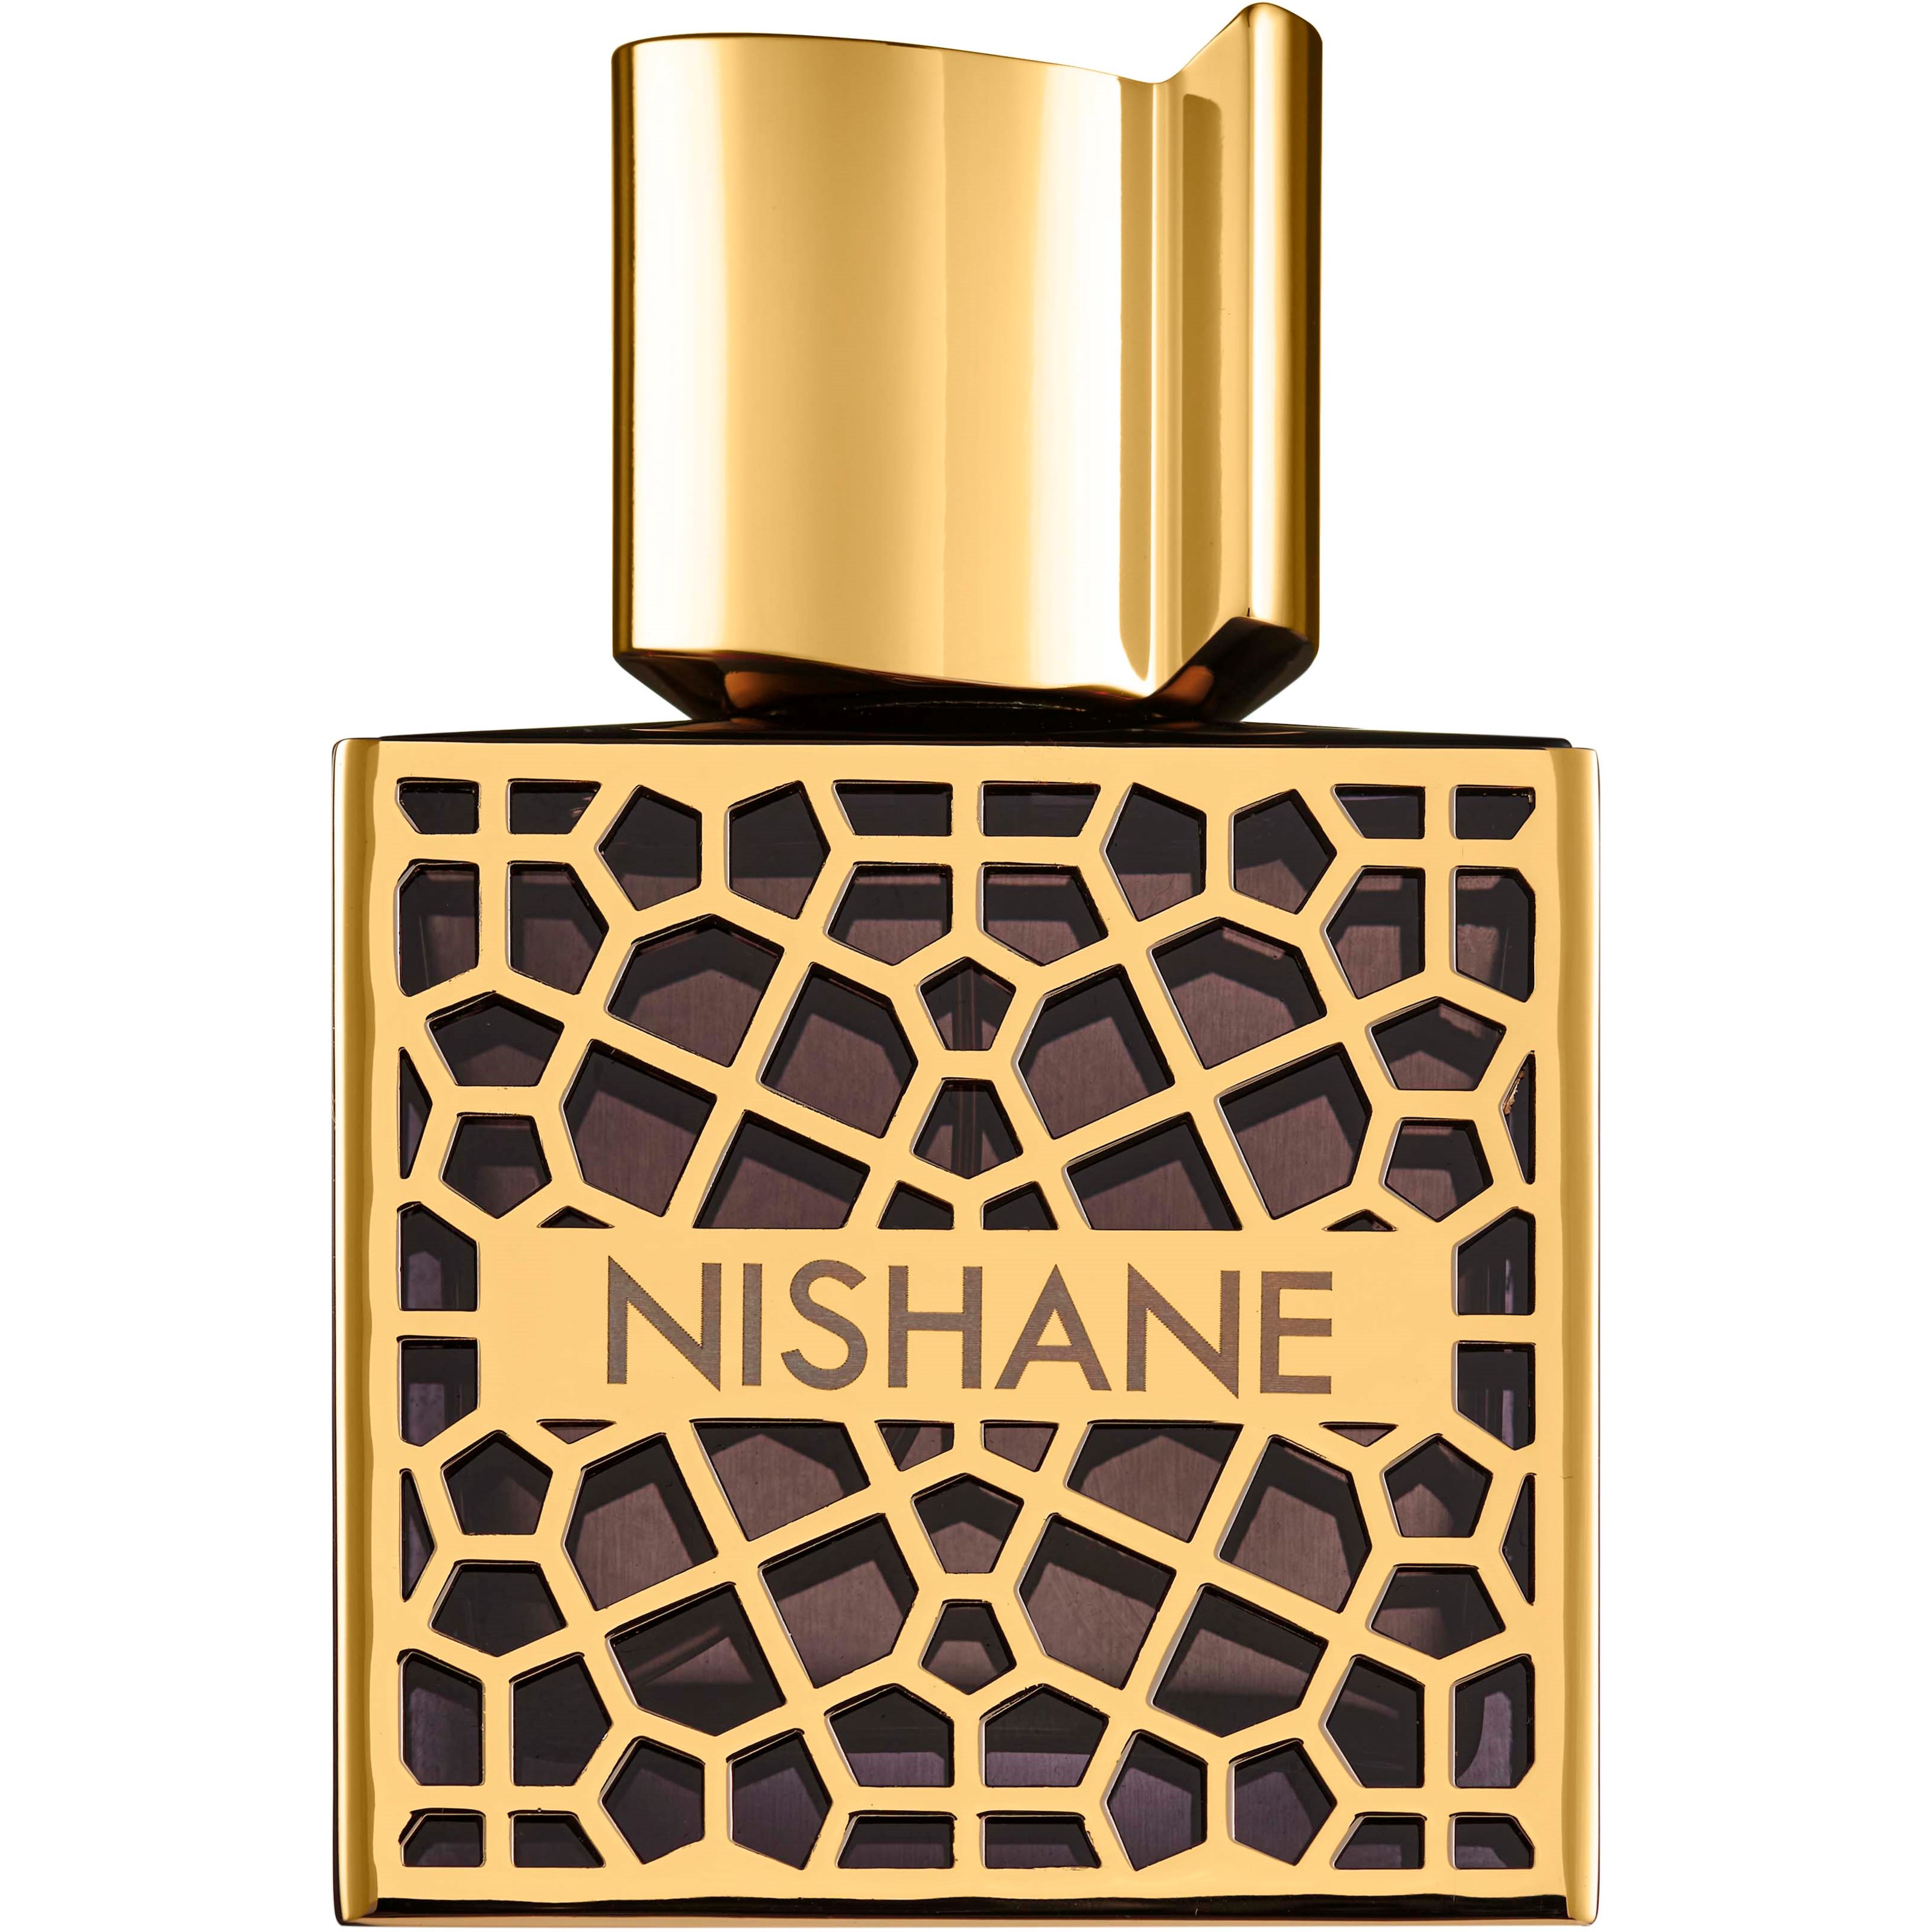 Nishane Nefs 50 ml